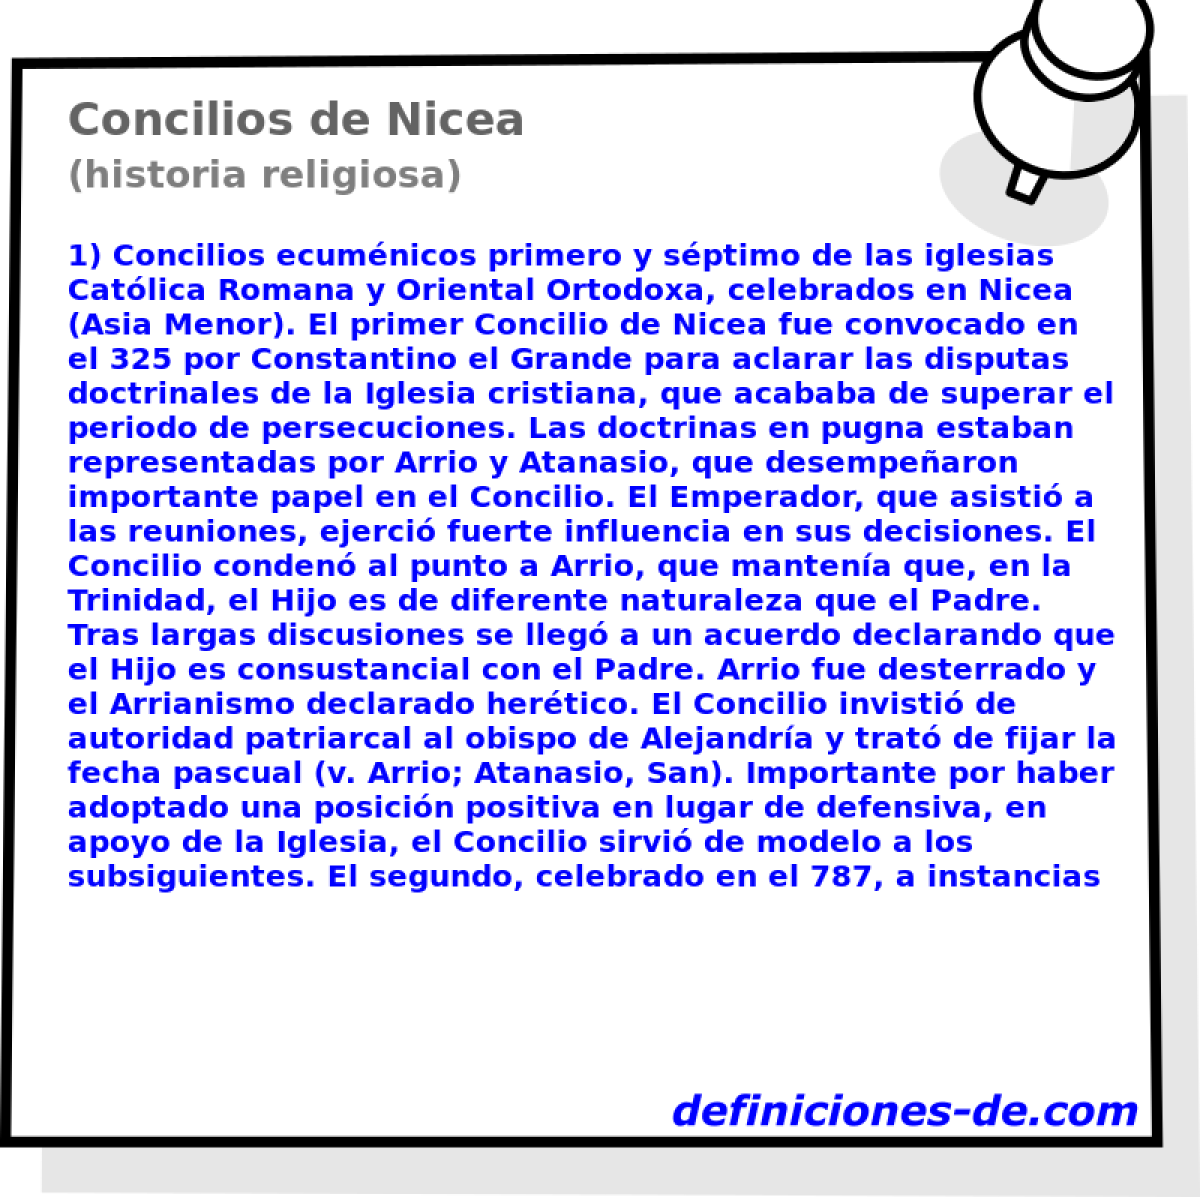 Concilios de Nicea (historia religiosa)